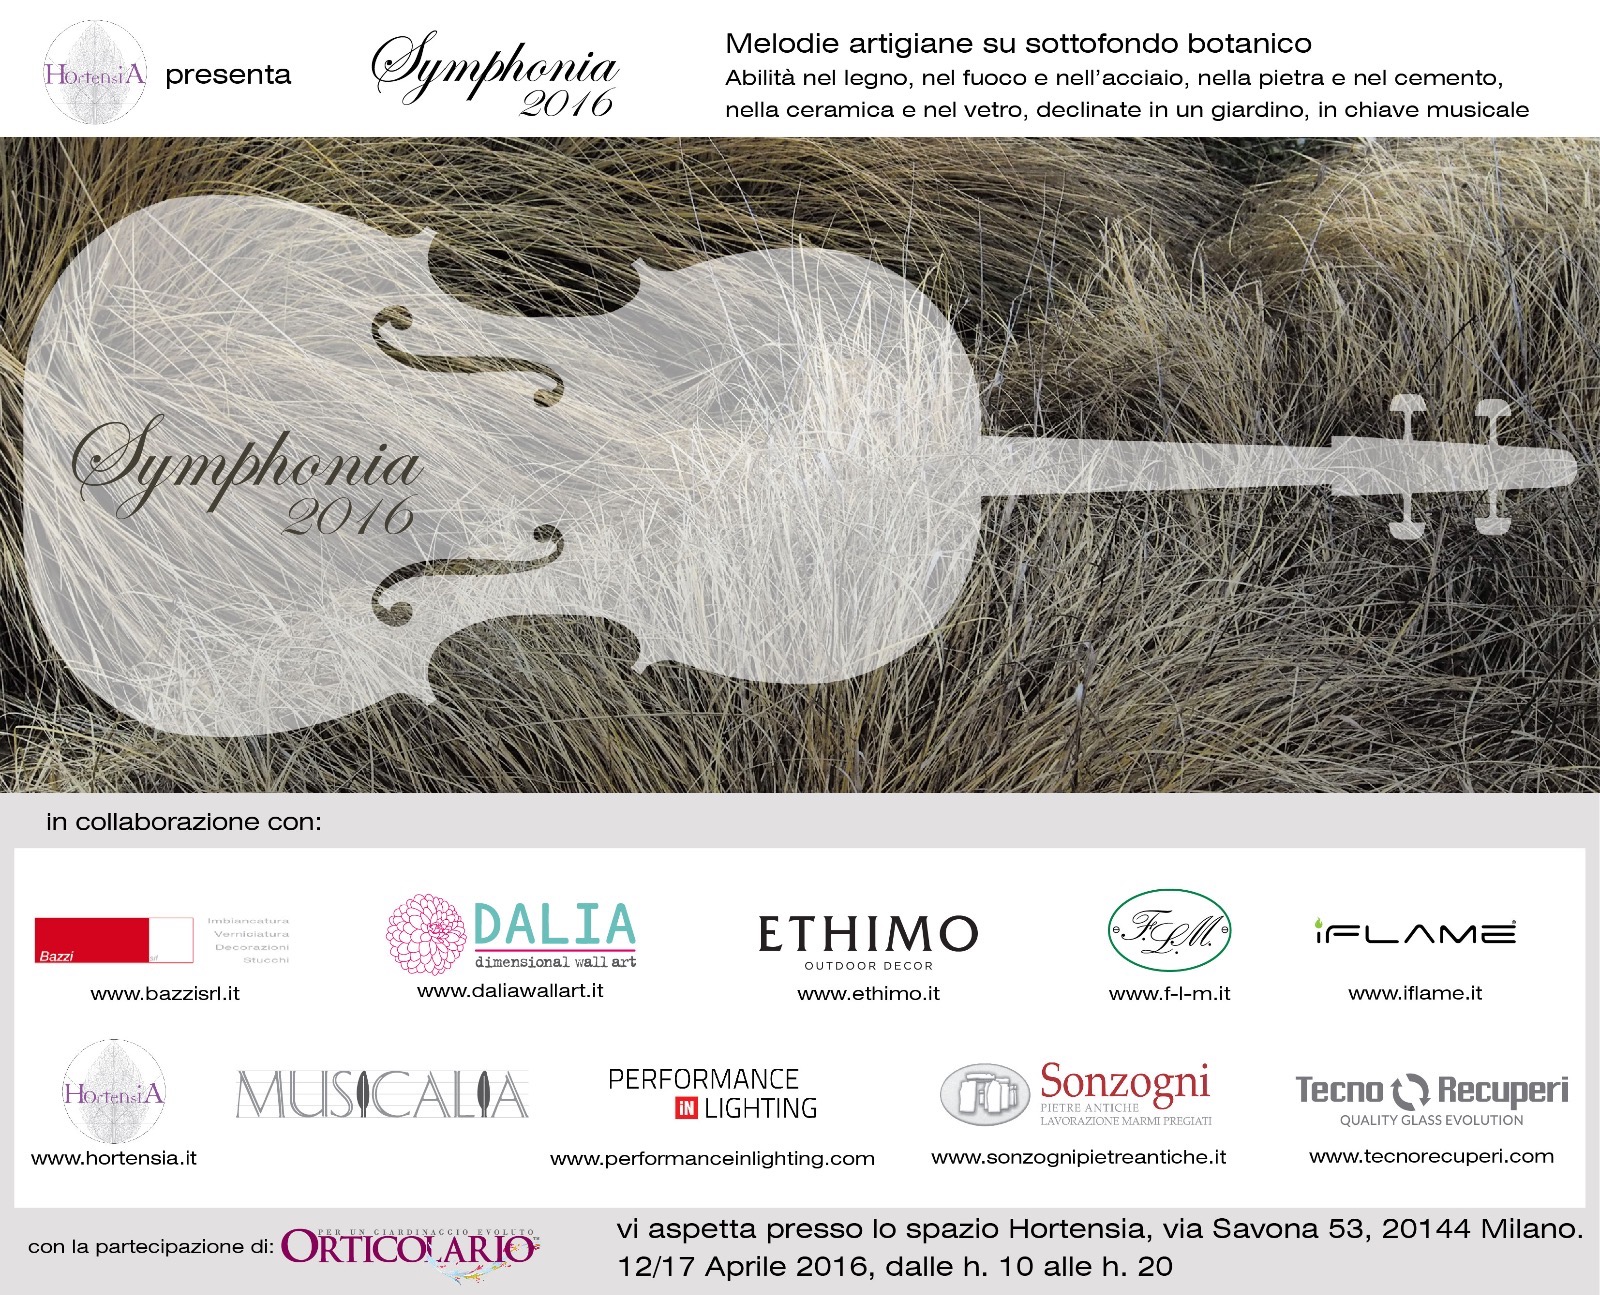 Nei giorni della Design week 2016, dal 12 al 17 Aprile, dalle 10.00 alle 20.00, nello Spazio Hortensia, in via Savona 53 a Milano, si tiene "Symphonia 2016".